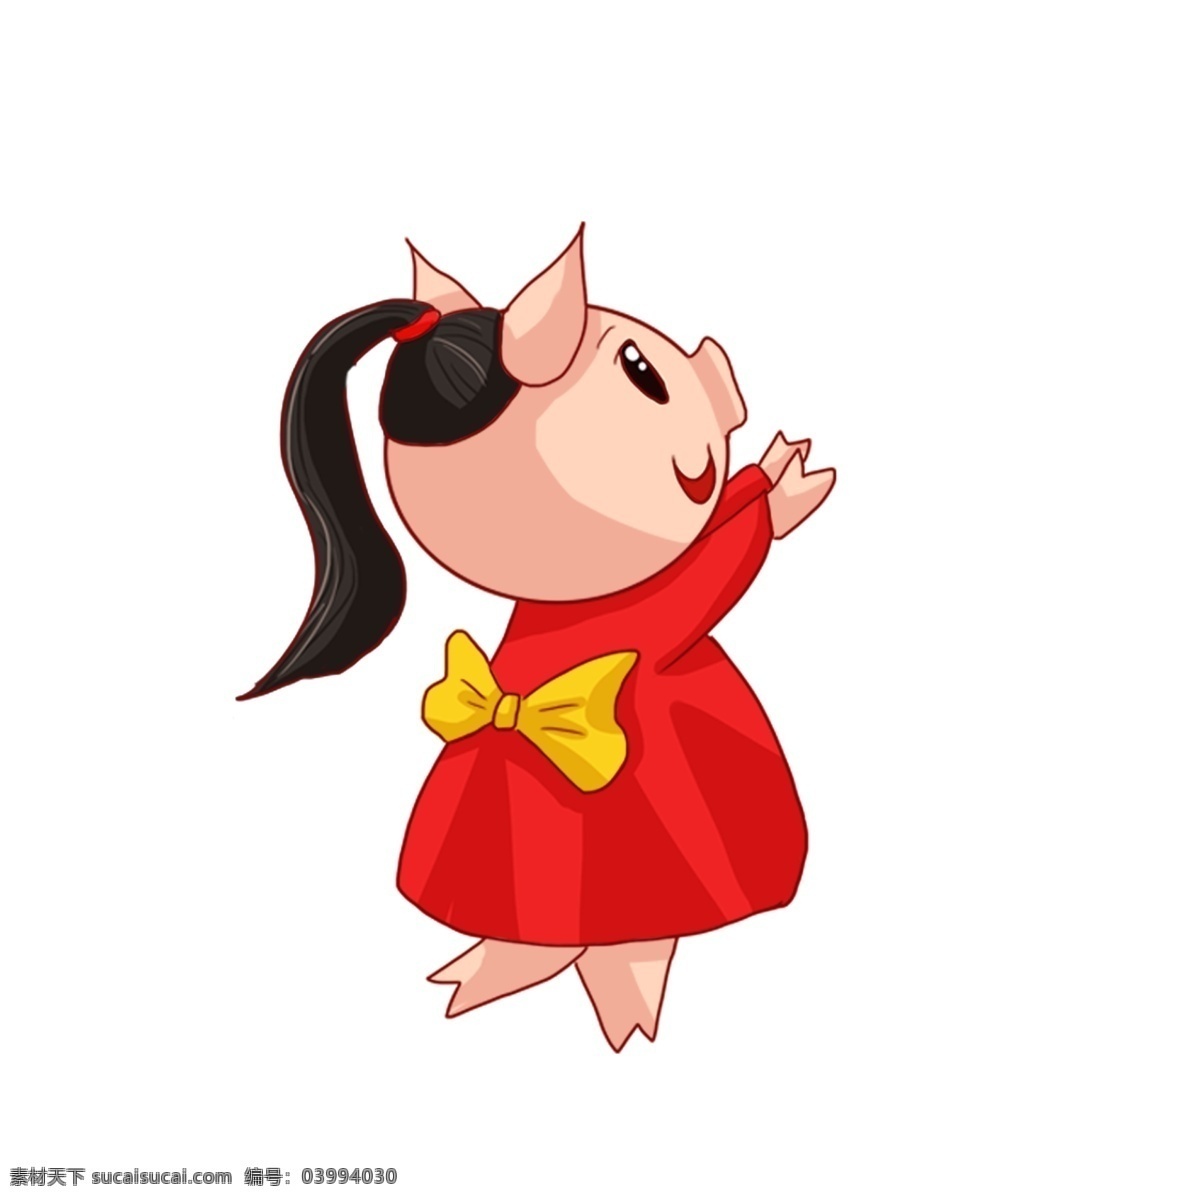 彩绘 可爱 穿 红 裙子 小 猪 女孩 卡通 插画 春节 儿童 新年 红裙 红衣 猪猪女孩 猪年